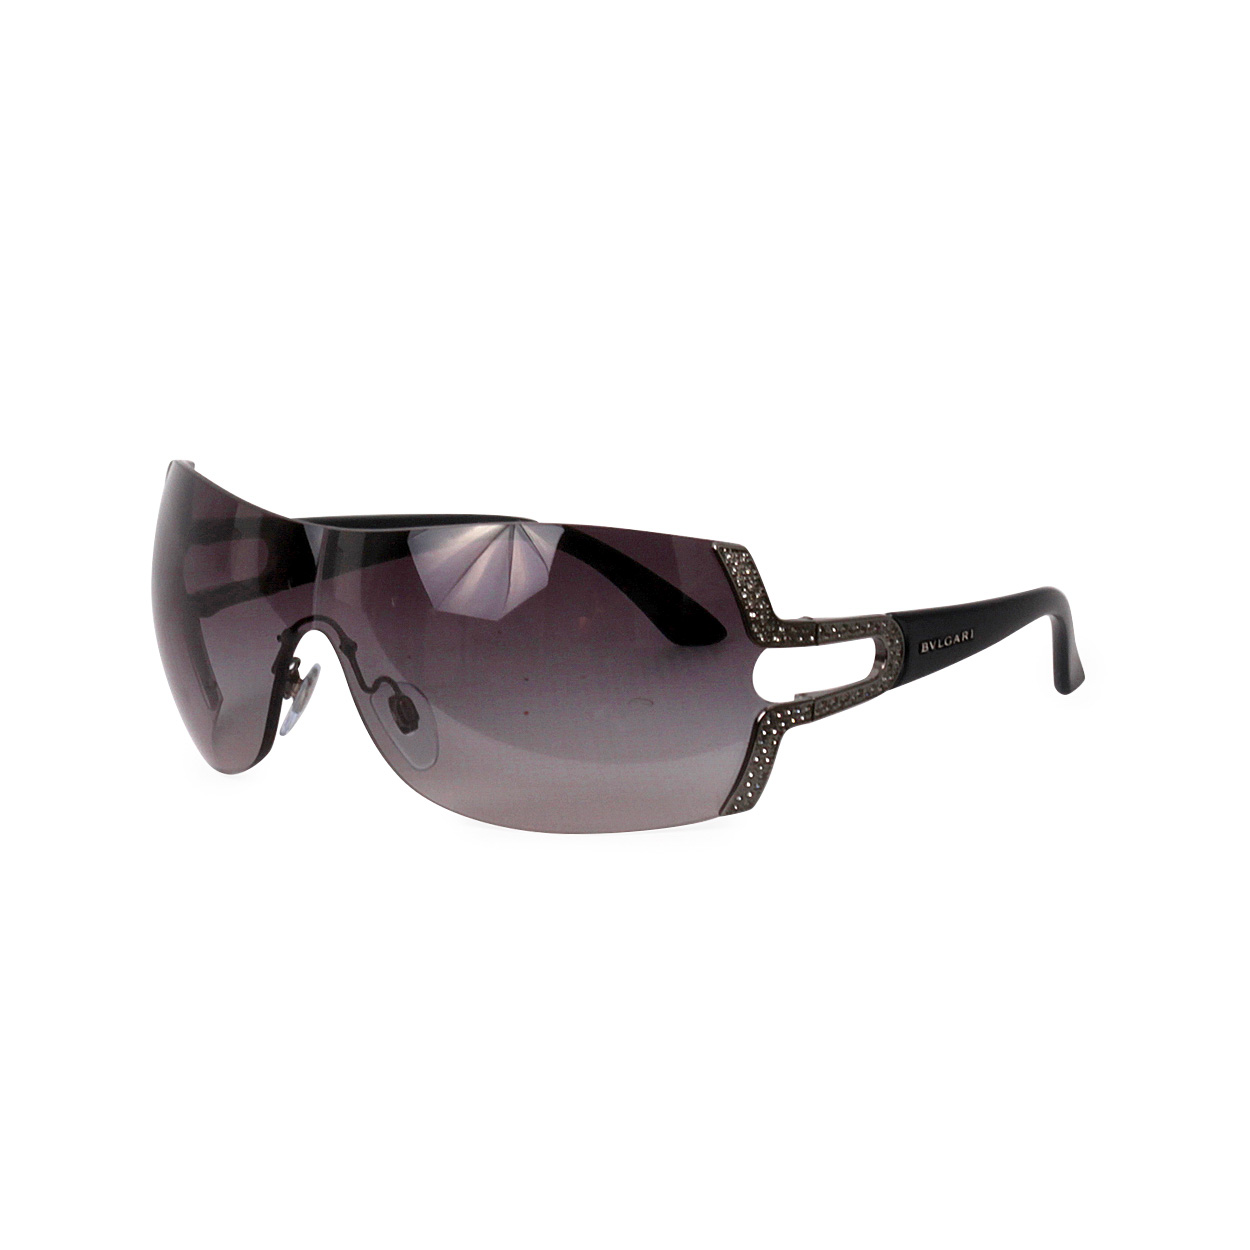 BVLGARI Sunglasses 6038 B Grey | Luxity